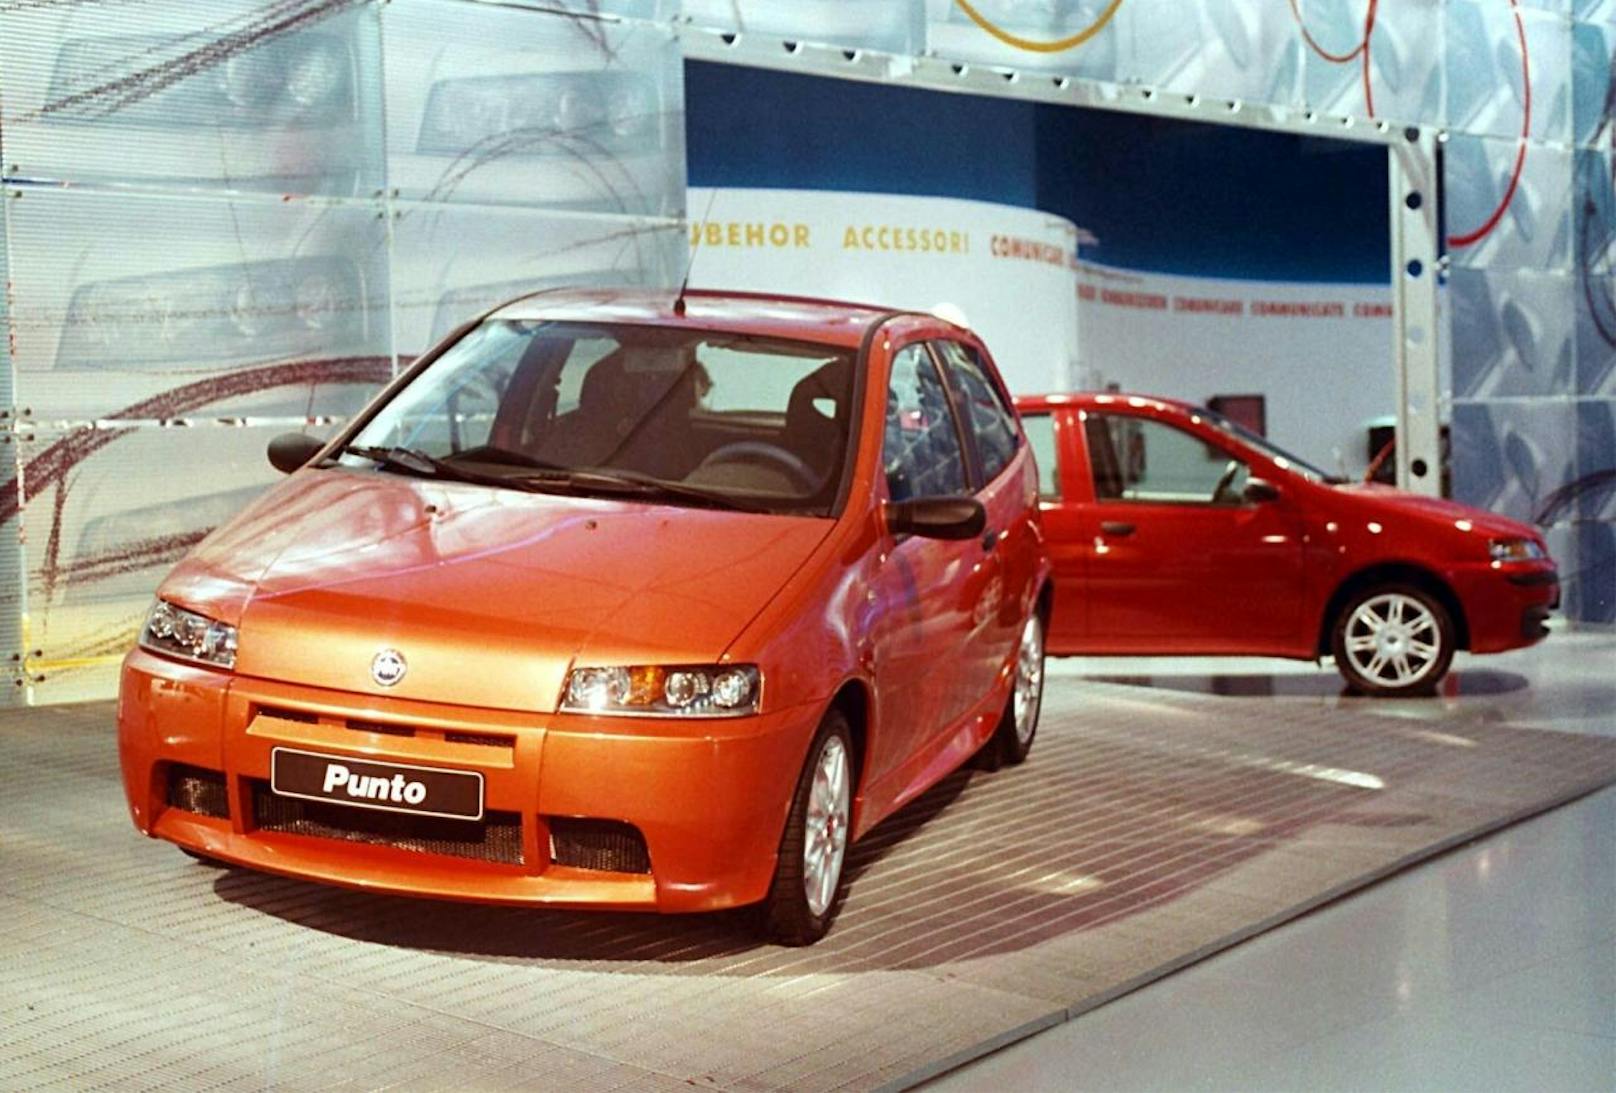 Der Fiat Punto wird nach 25 Jahren eingestellt. Er war eines der erfolgreichsten Fiat-Modelle.